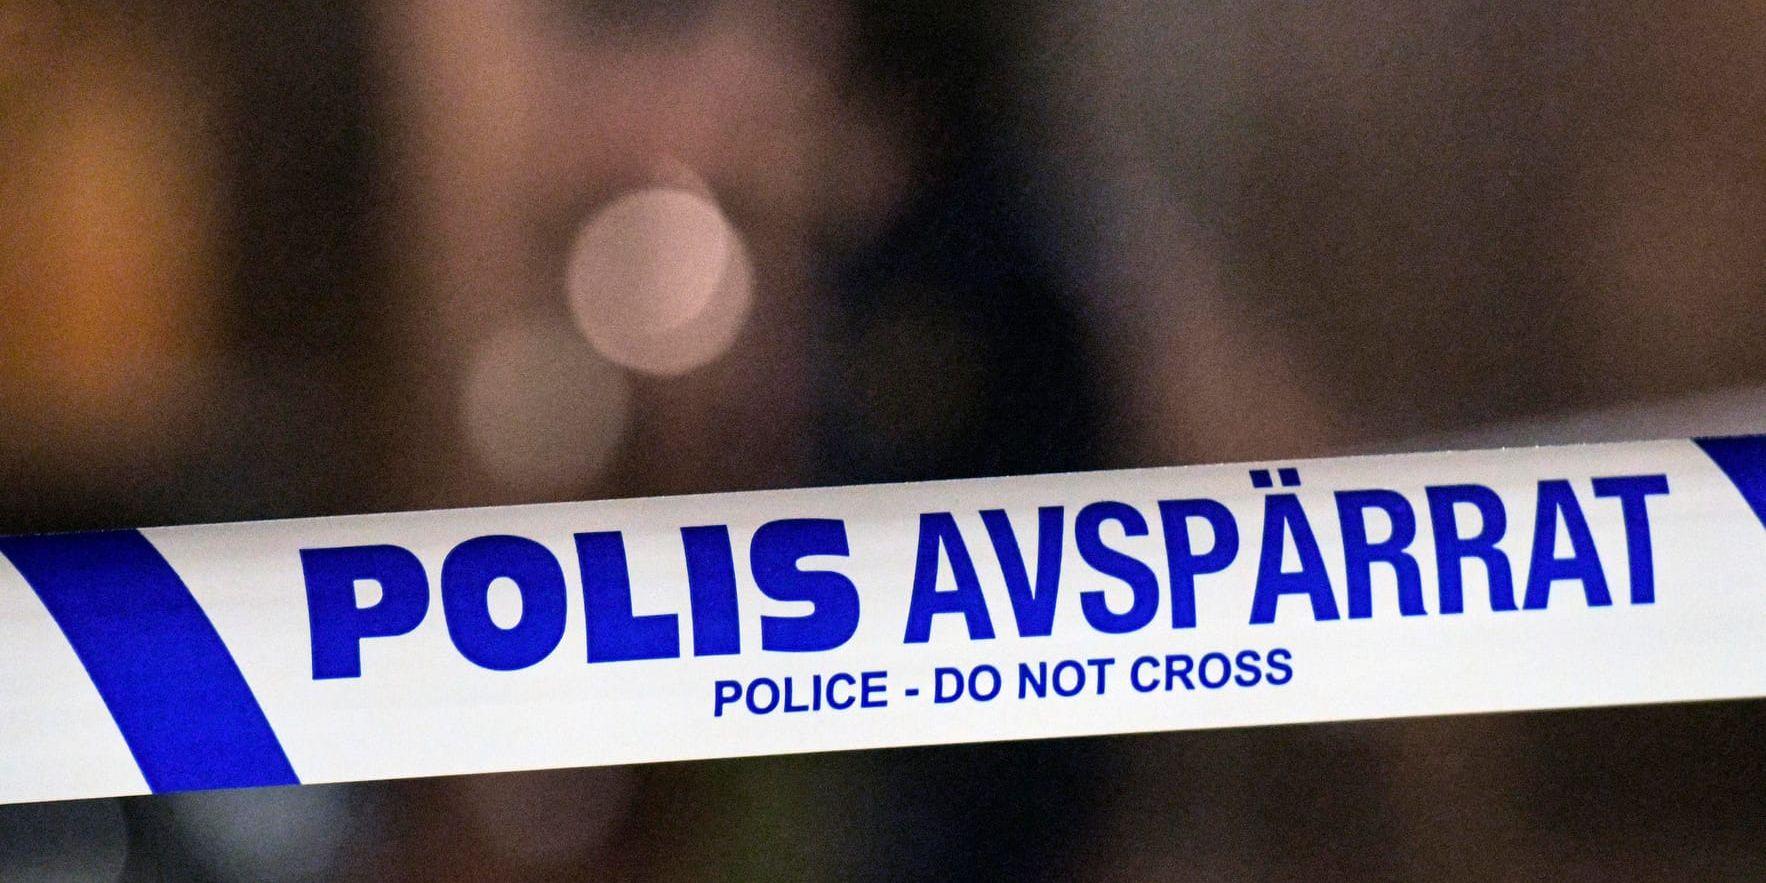 Polis har spärrat av i Malmö där skotthål har hittats i ett bostadshus. Arkivbild.